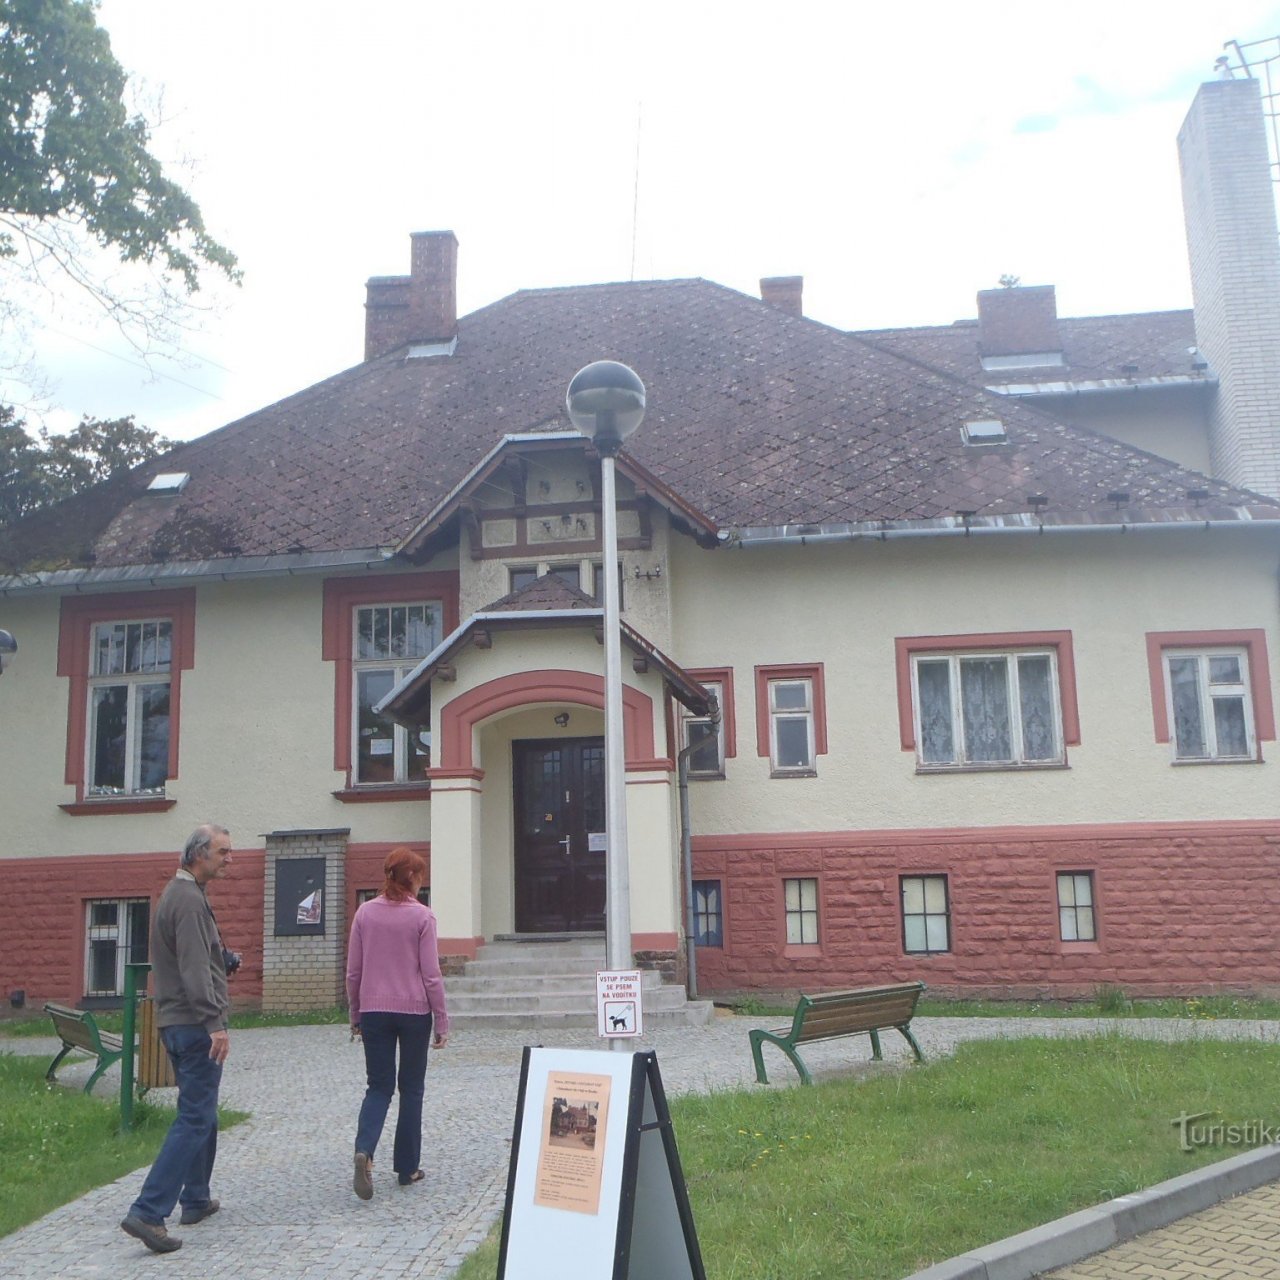 Háj ve Slezsku, muzeum